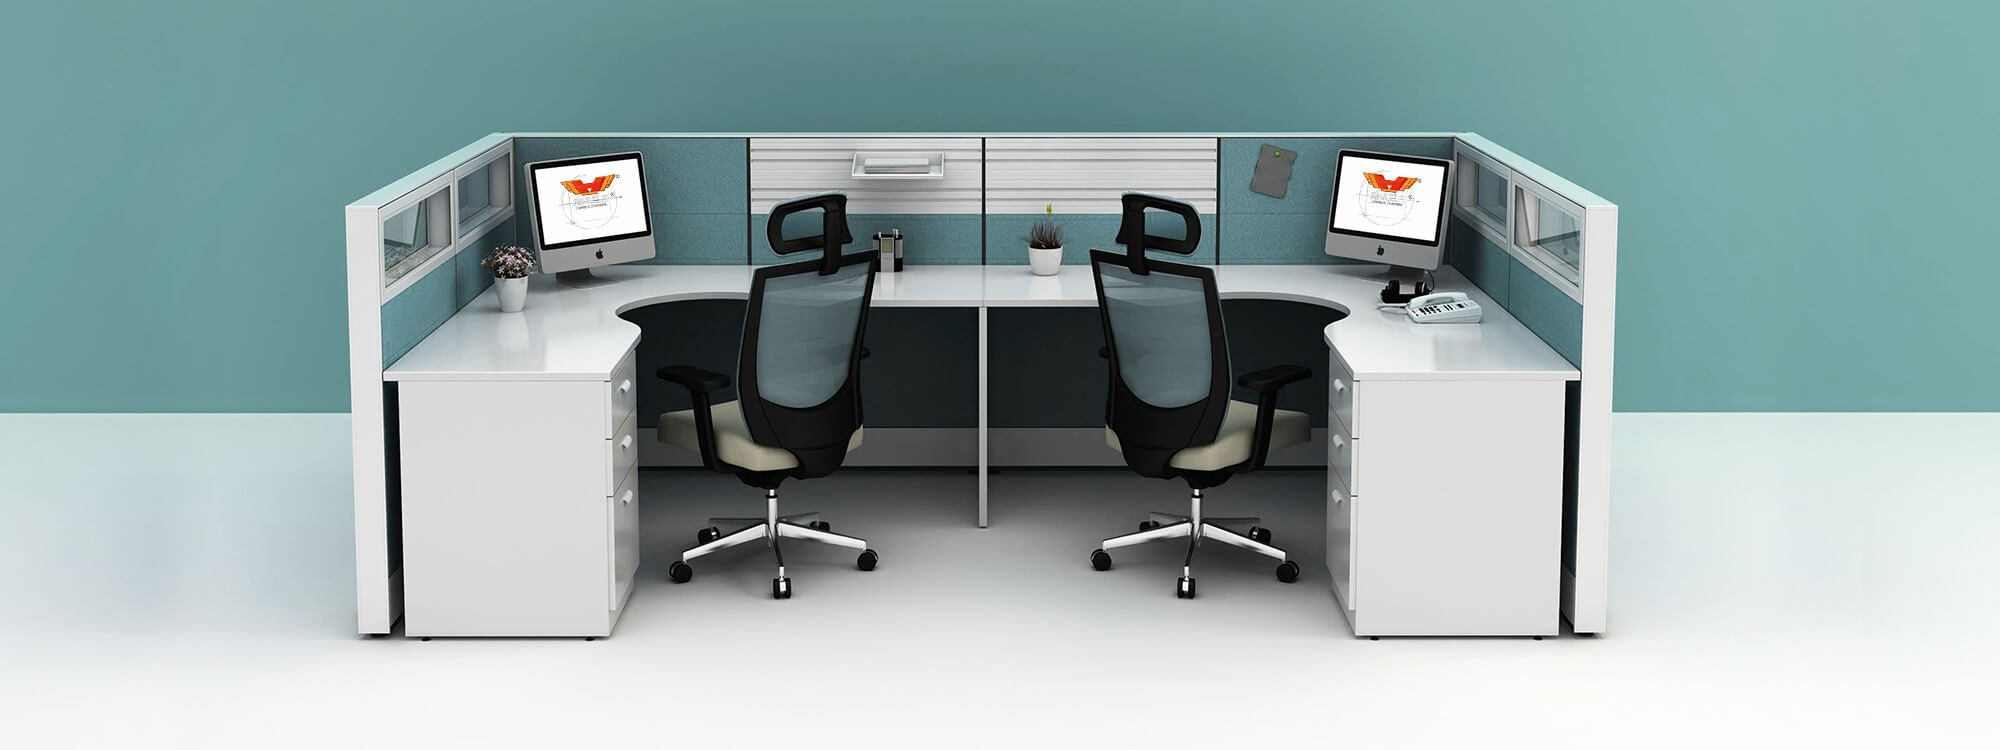 La cabine modulaire en tant que meuble modulaire peut prendre en charge toute conception d'espace de bureau pour aider les lieux de travail à atteindre leur plein potentiel.